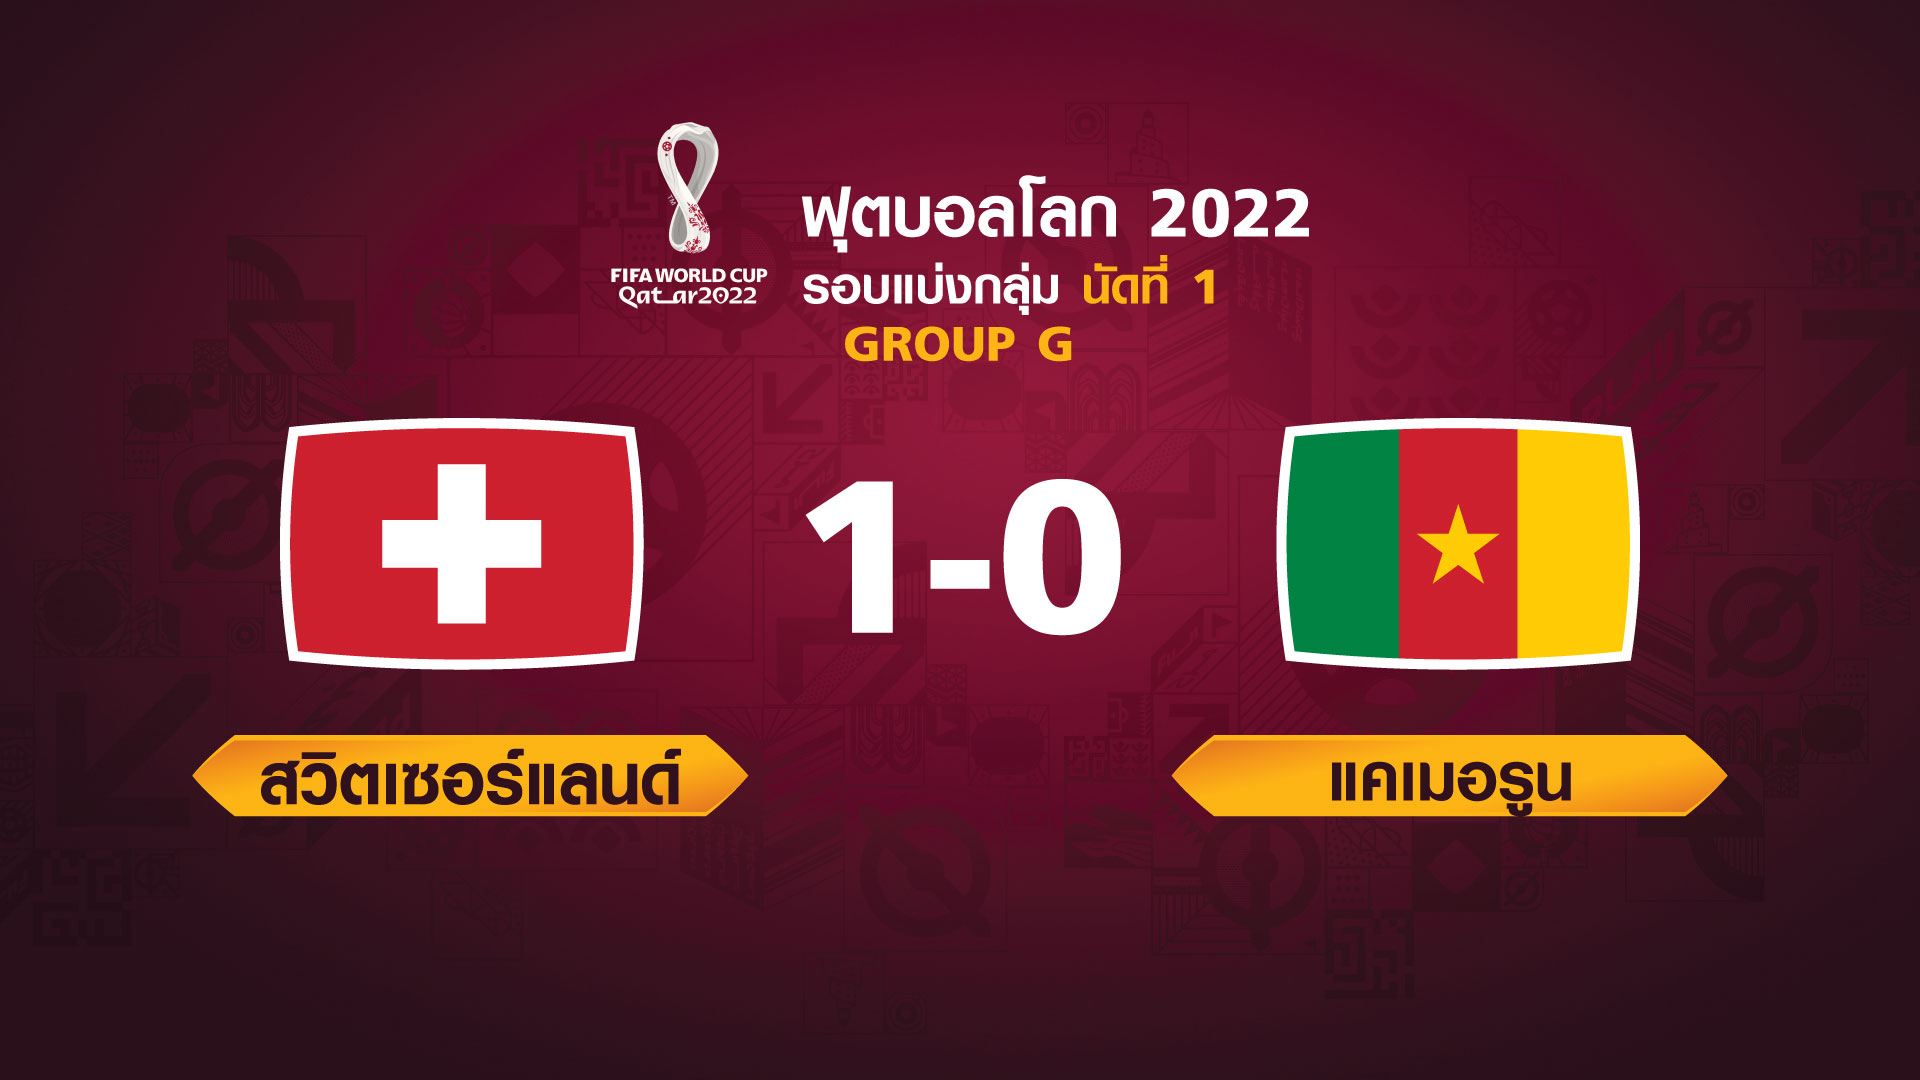 ฟุตบอลโลก 2022 รอบแบ่งกลุ่ม นัดแรก ระหว่าง Switzerland vs Cameroon